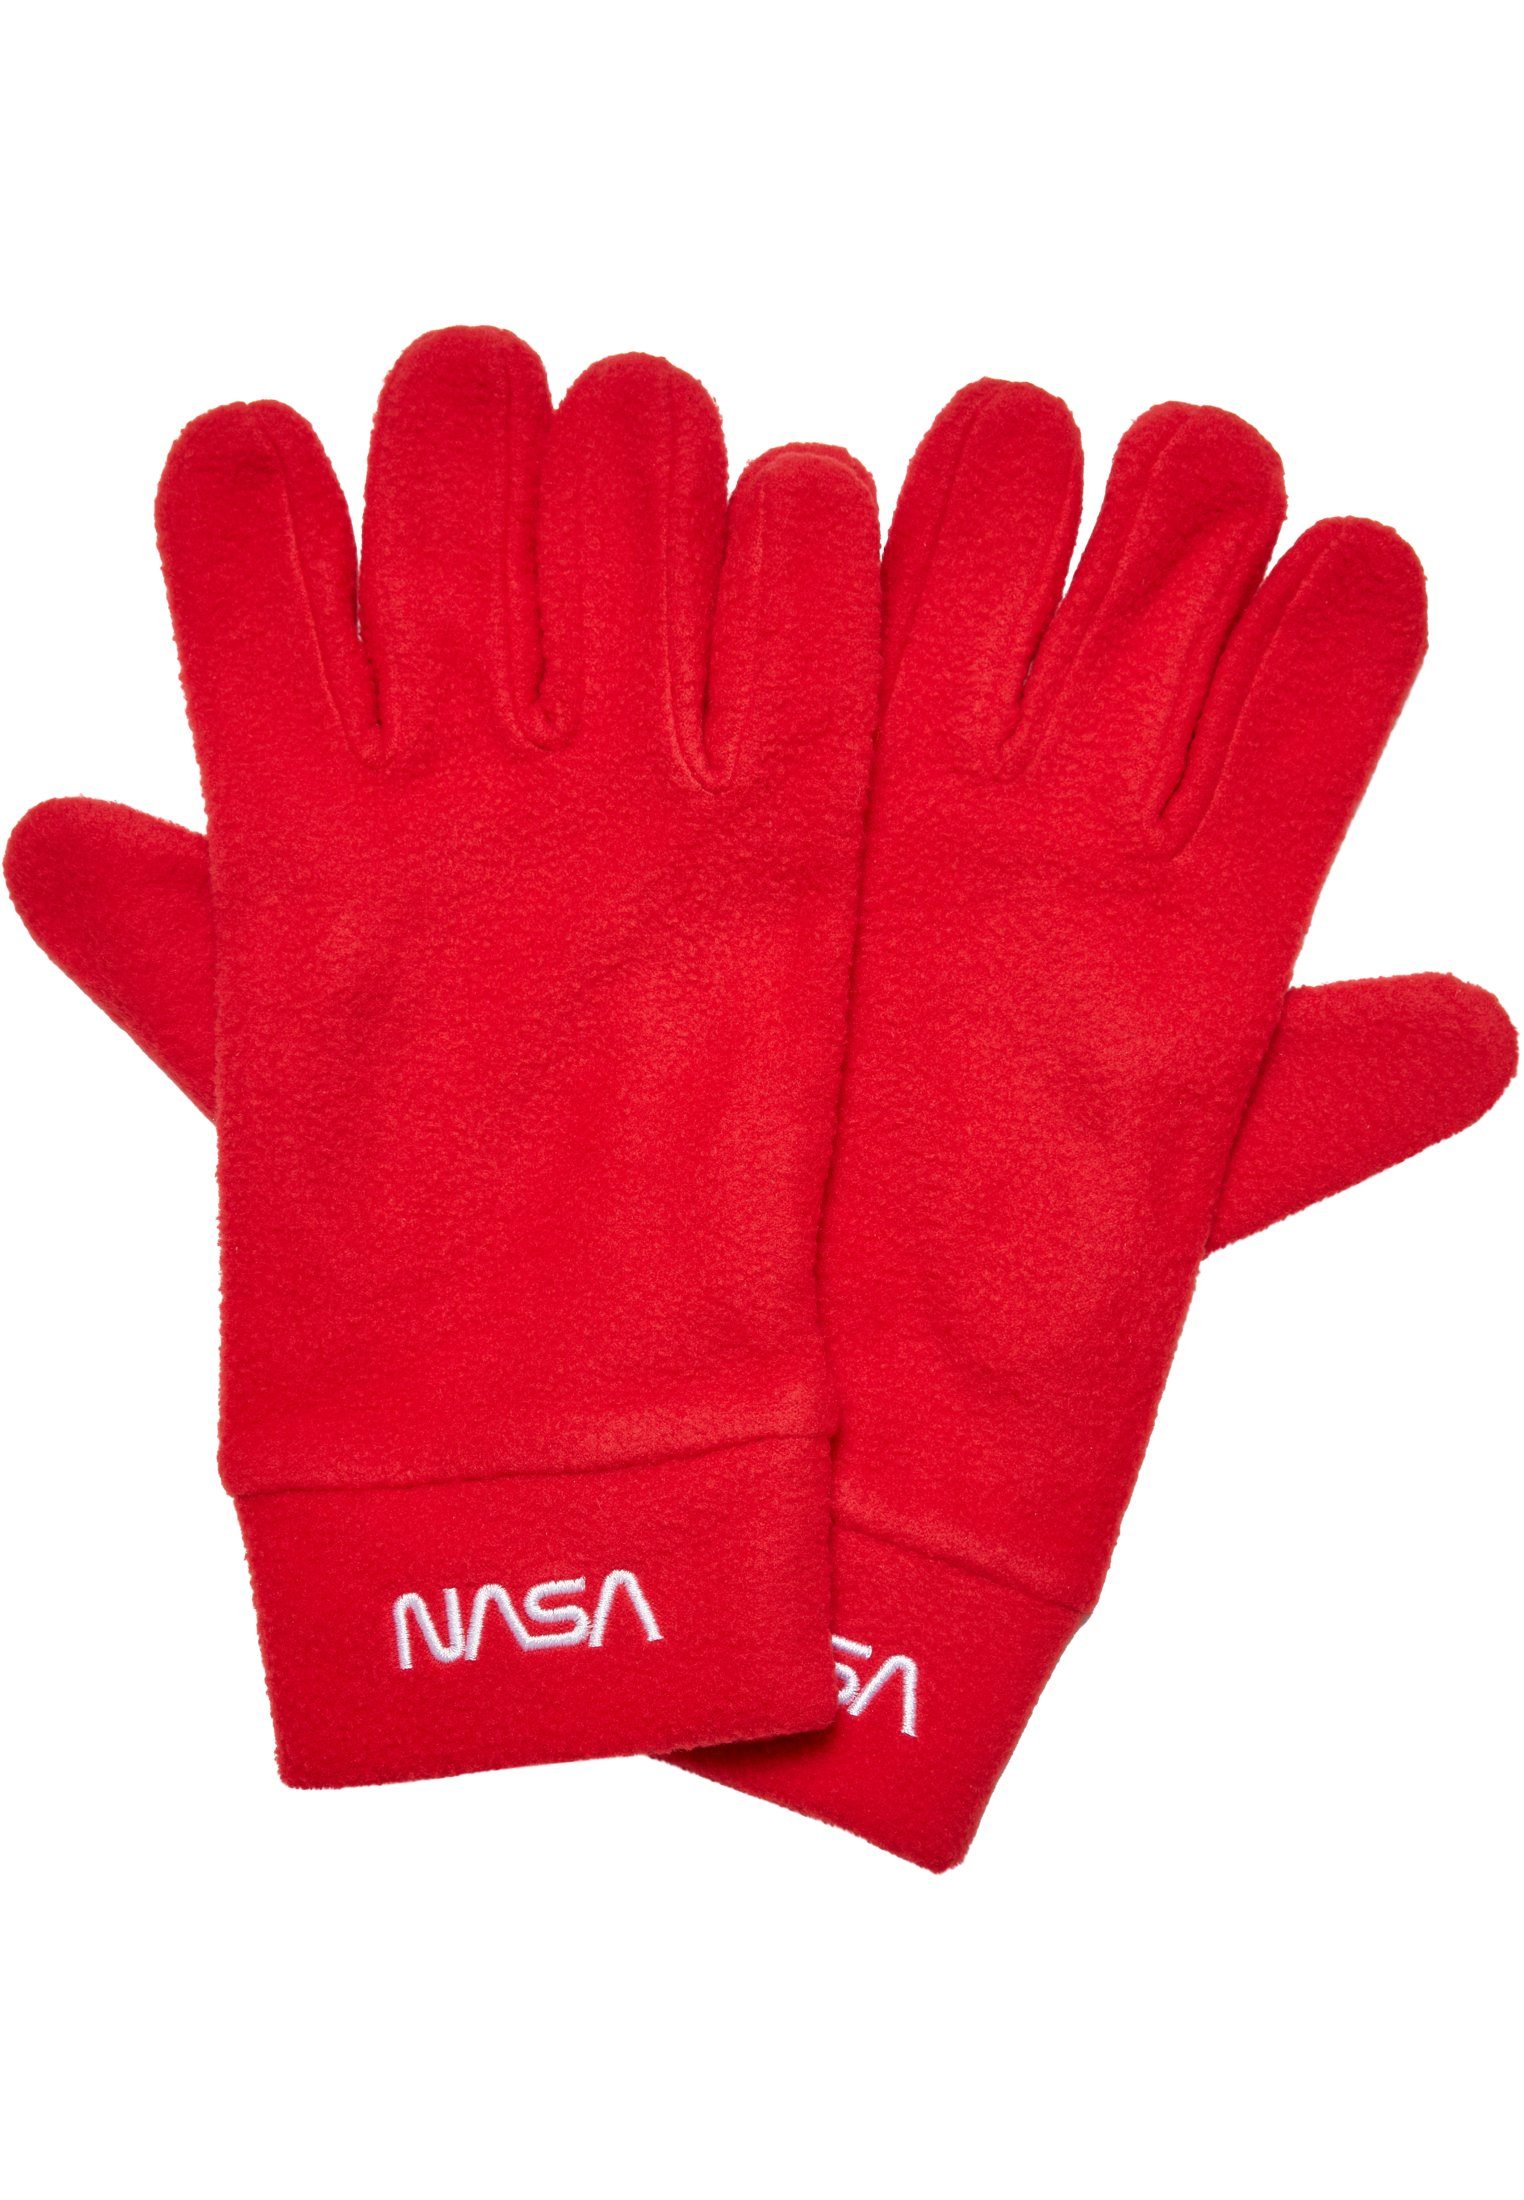 MisterTee Baumwollhandschuhe Accessoires Fleece NASA red Set